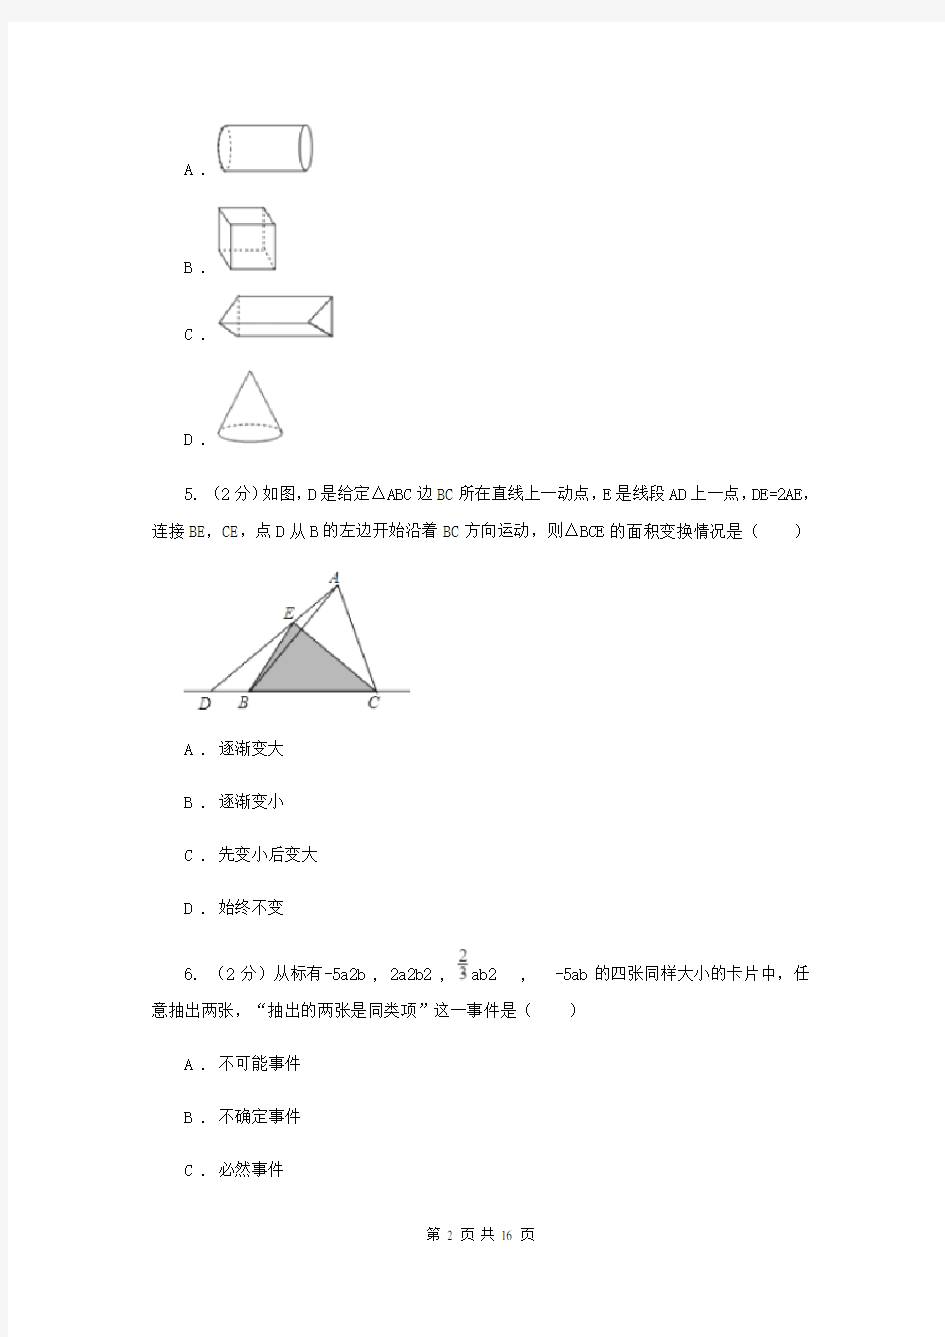 重庆市中考数学模拟试卷(I)卷